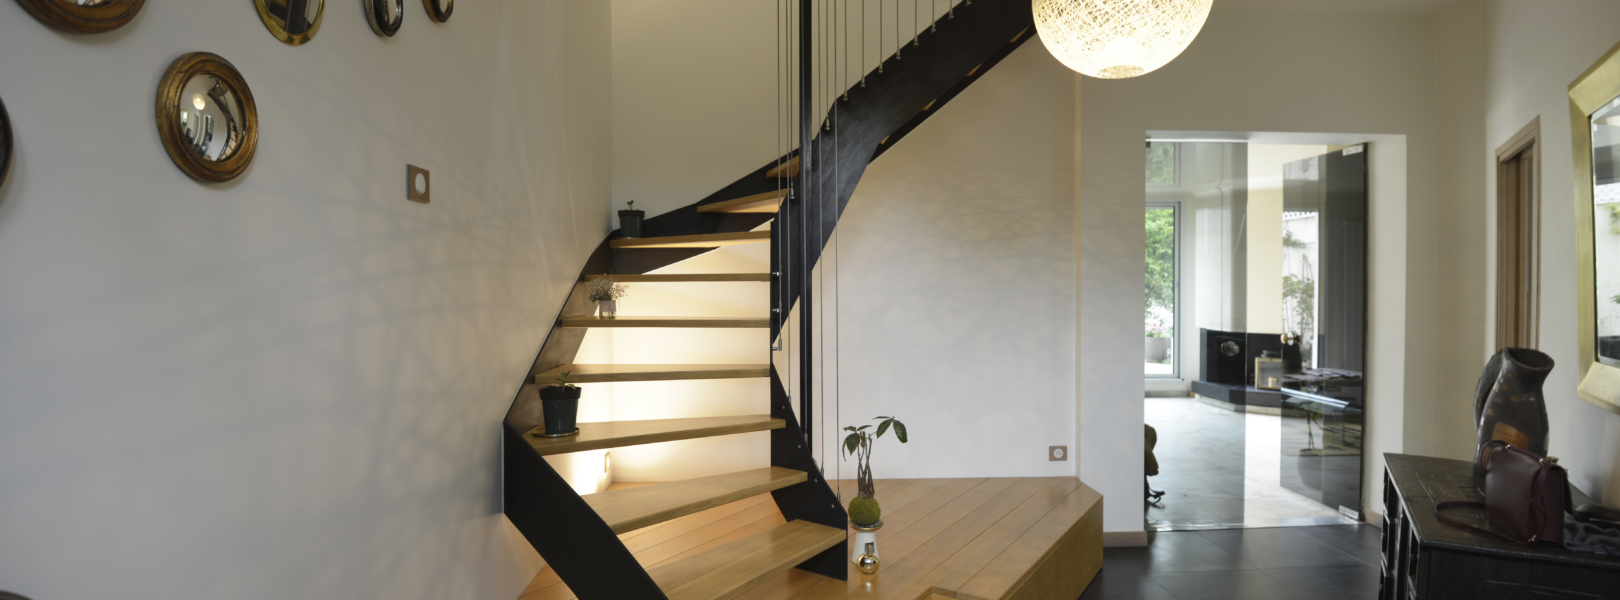 vue du rez-de-chaussée avec escalier metal bois sur mesure